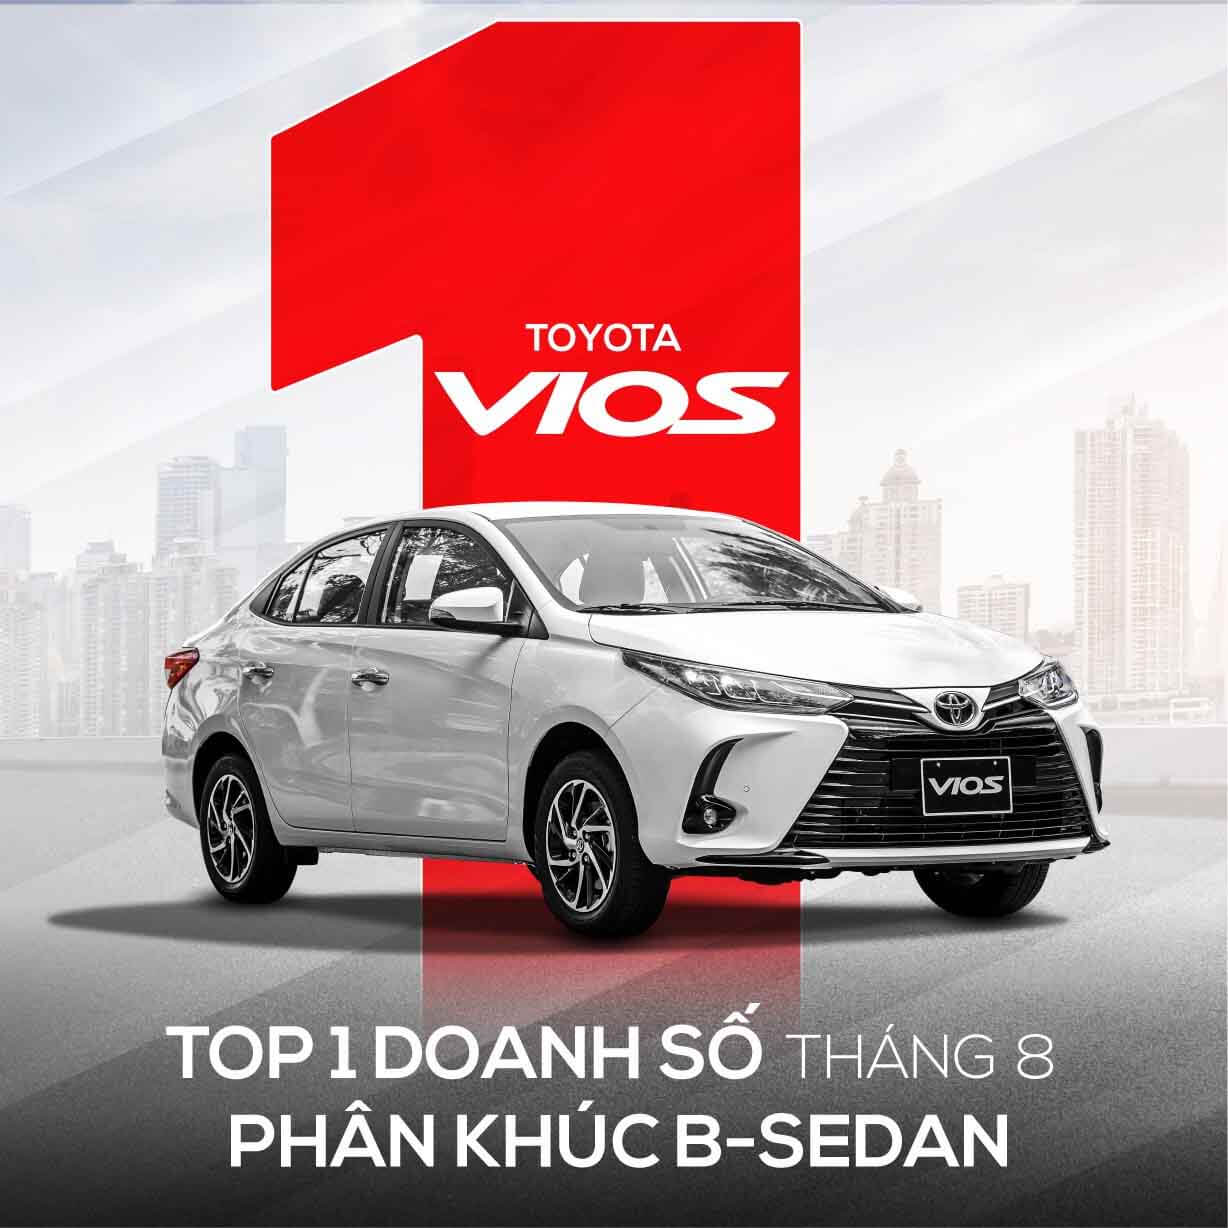 Toyota Vios luôn dẫn đầu doanh số bán xe phân khúc B-Sedan  